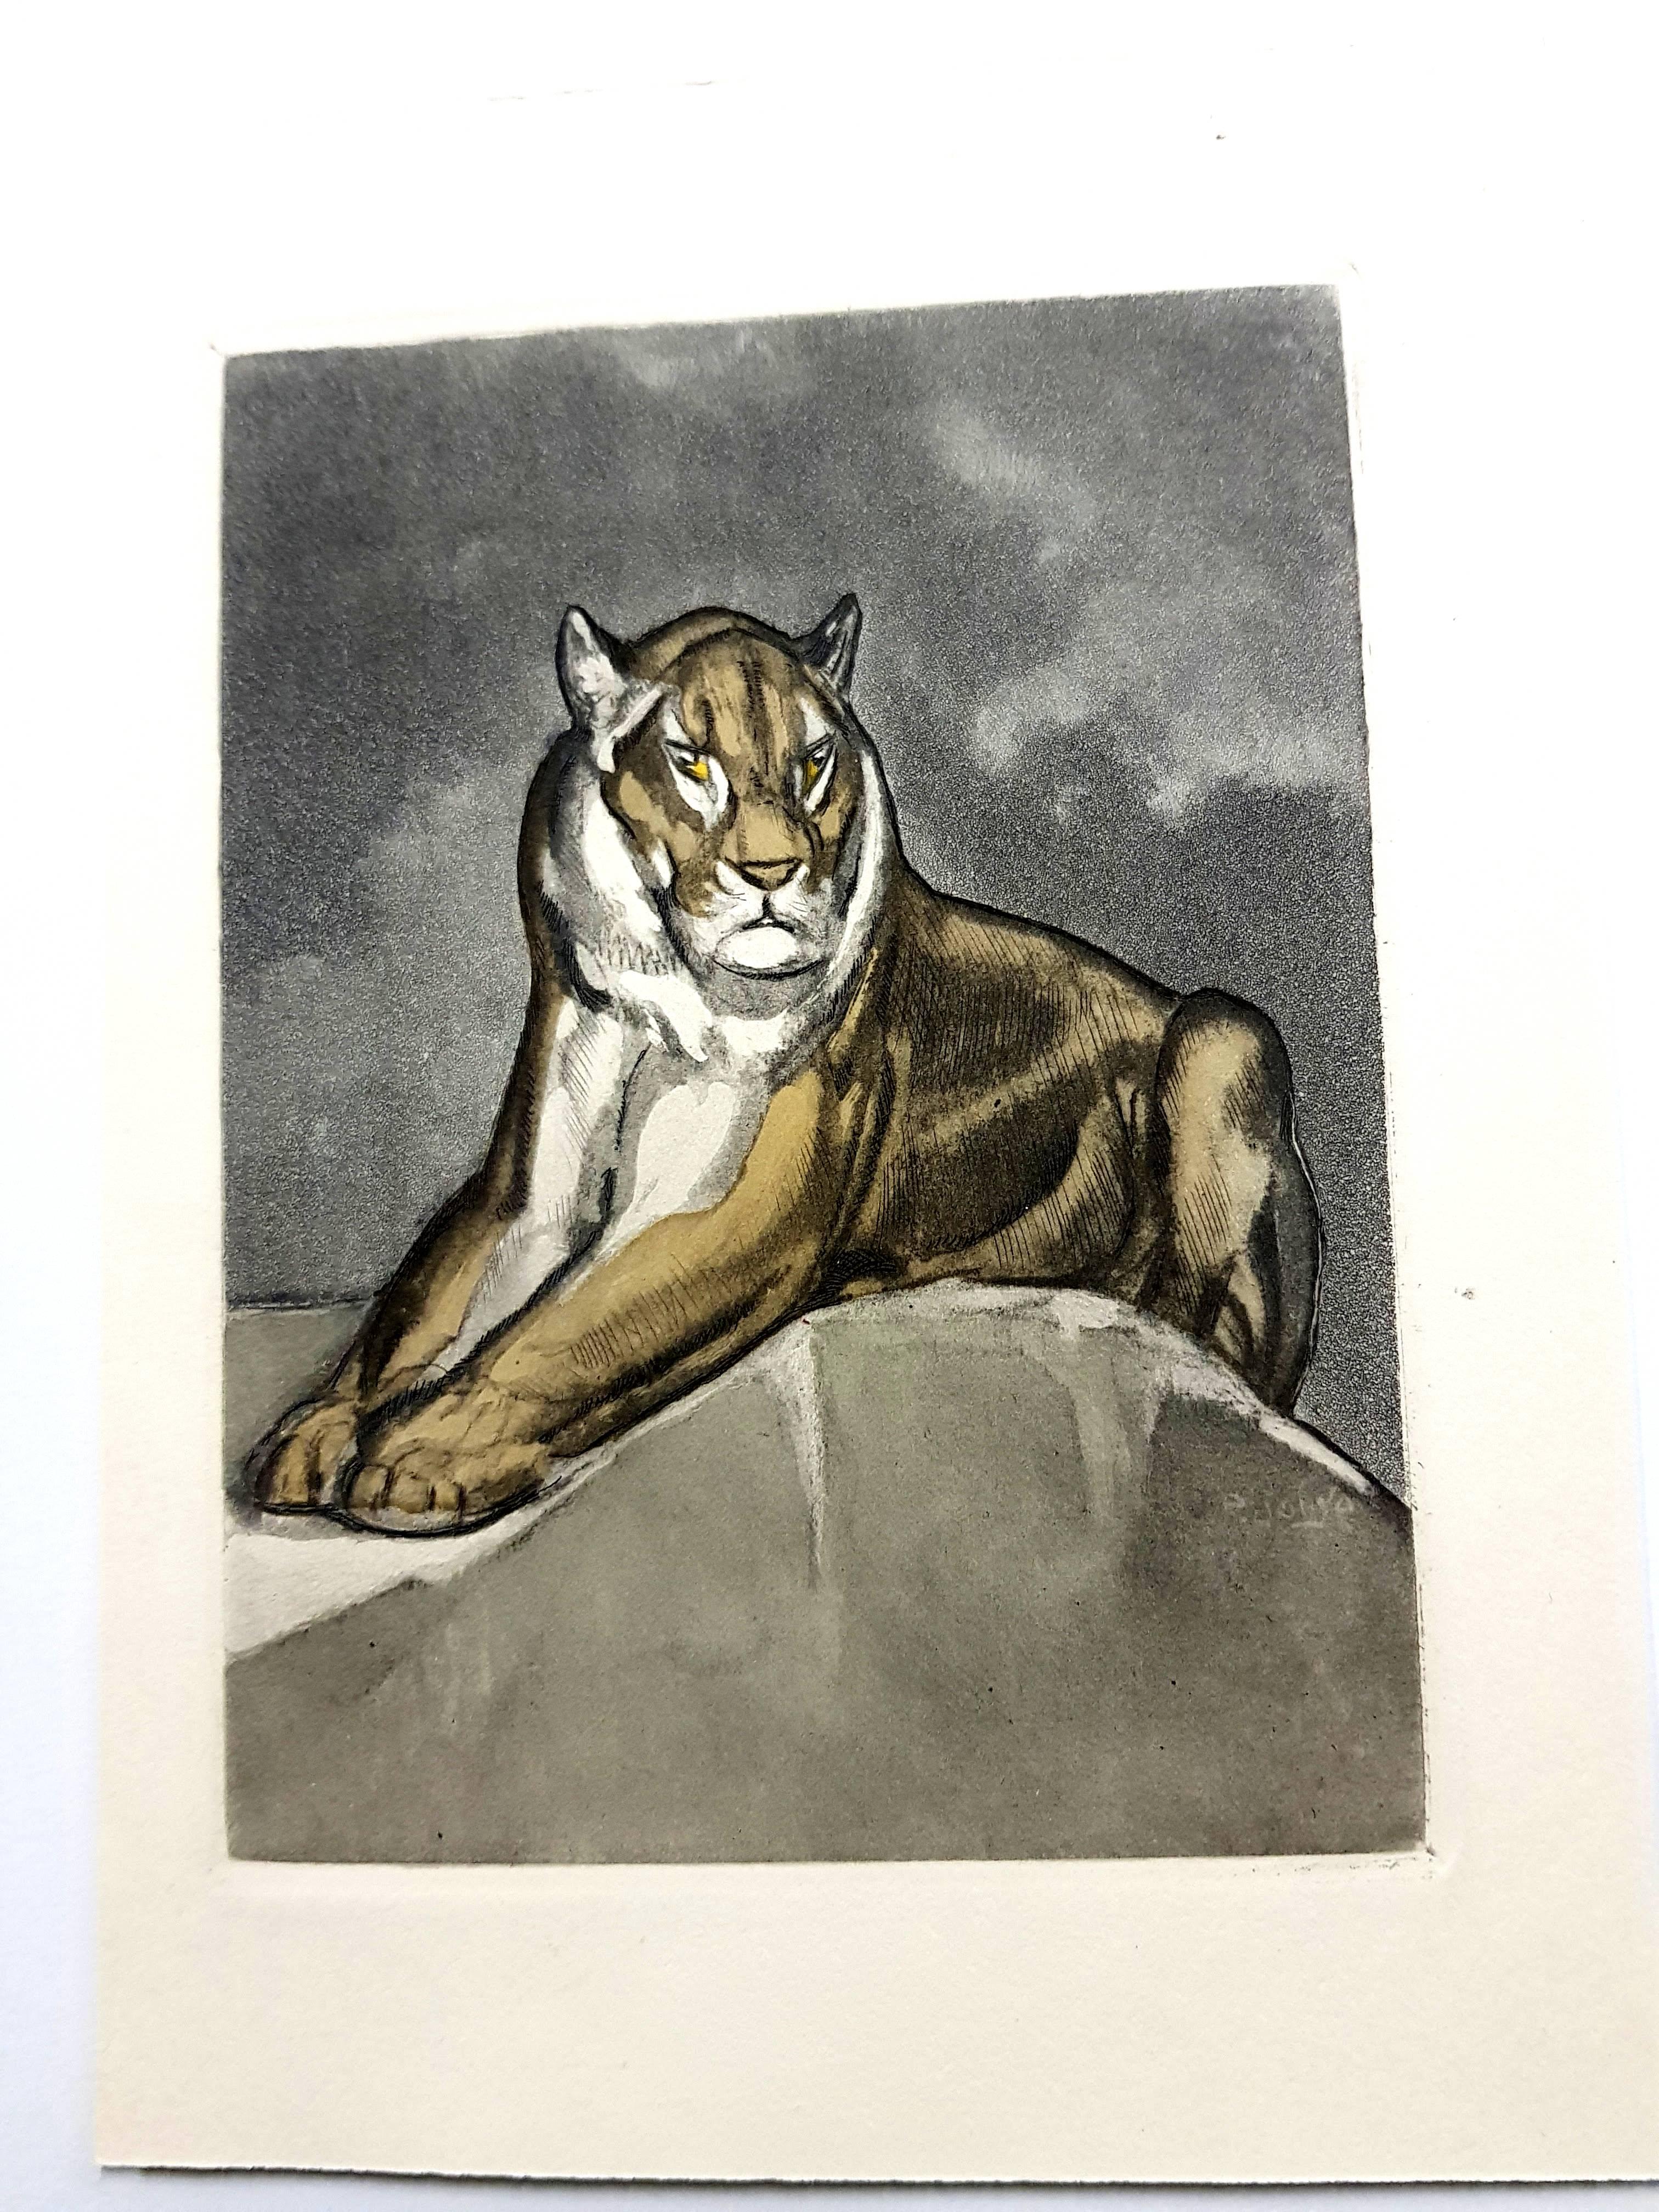 Paul Jouve (after) - Tiger - Original Engraving - Modern Print by Pierre-Paul Jouve